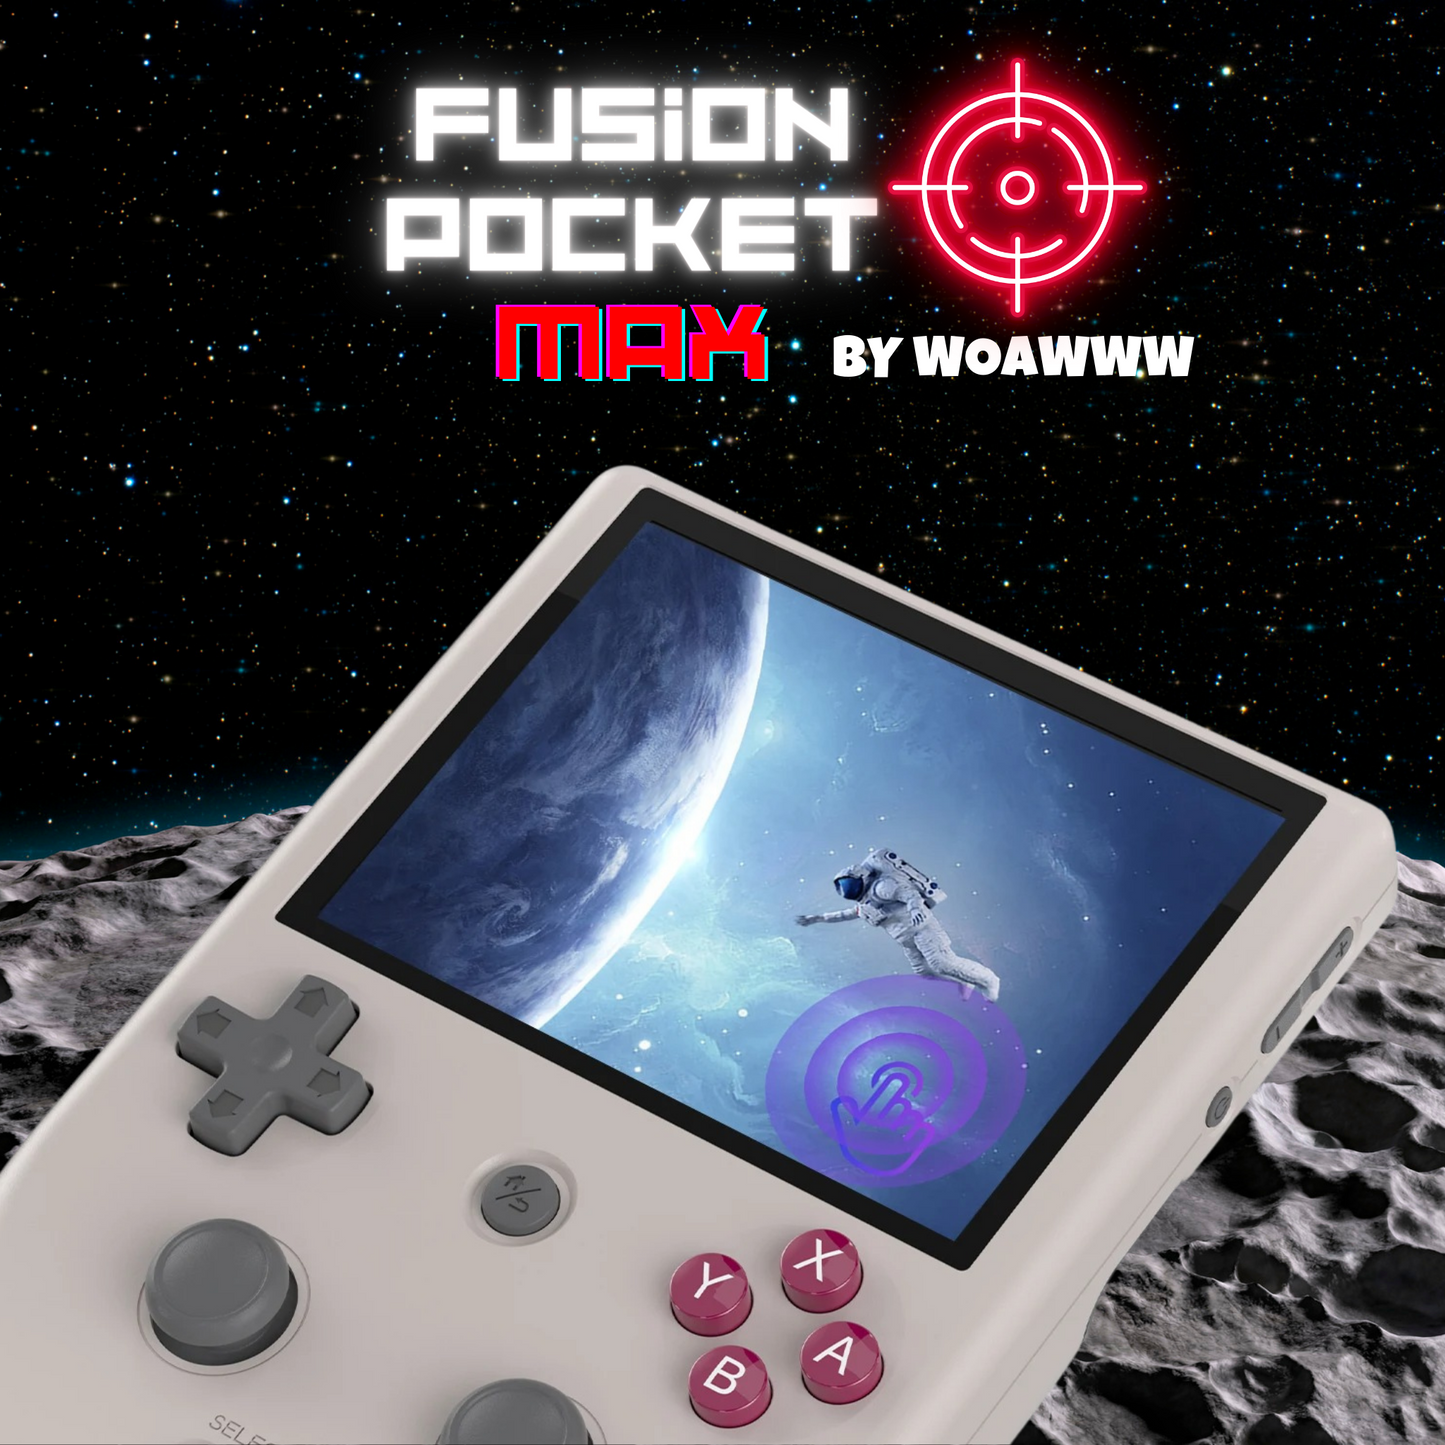 FusionPocket MAX